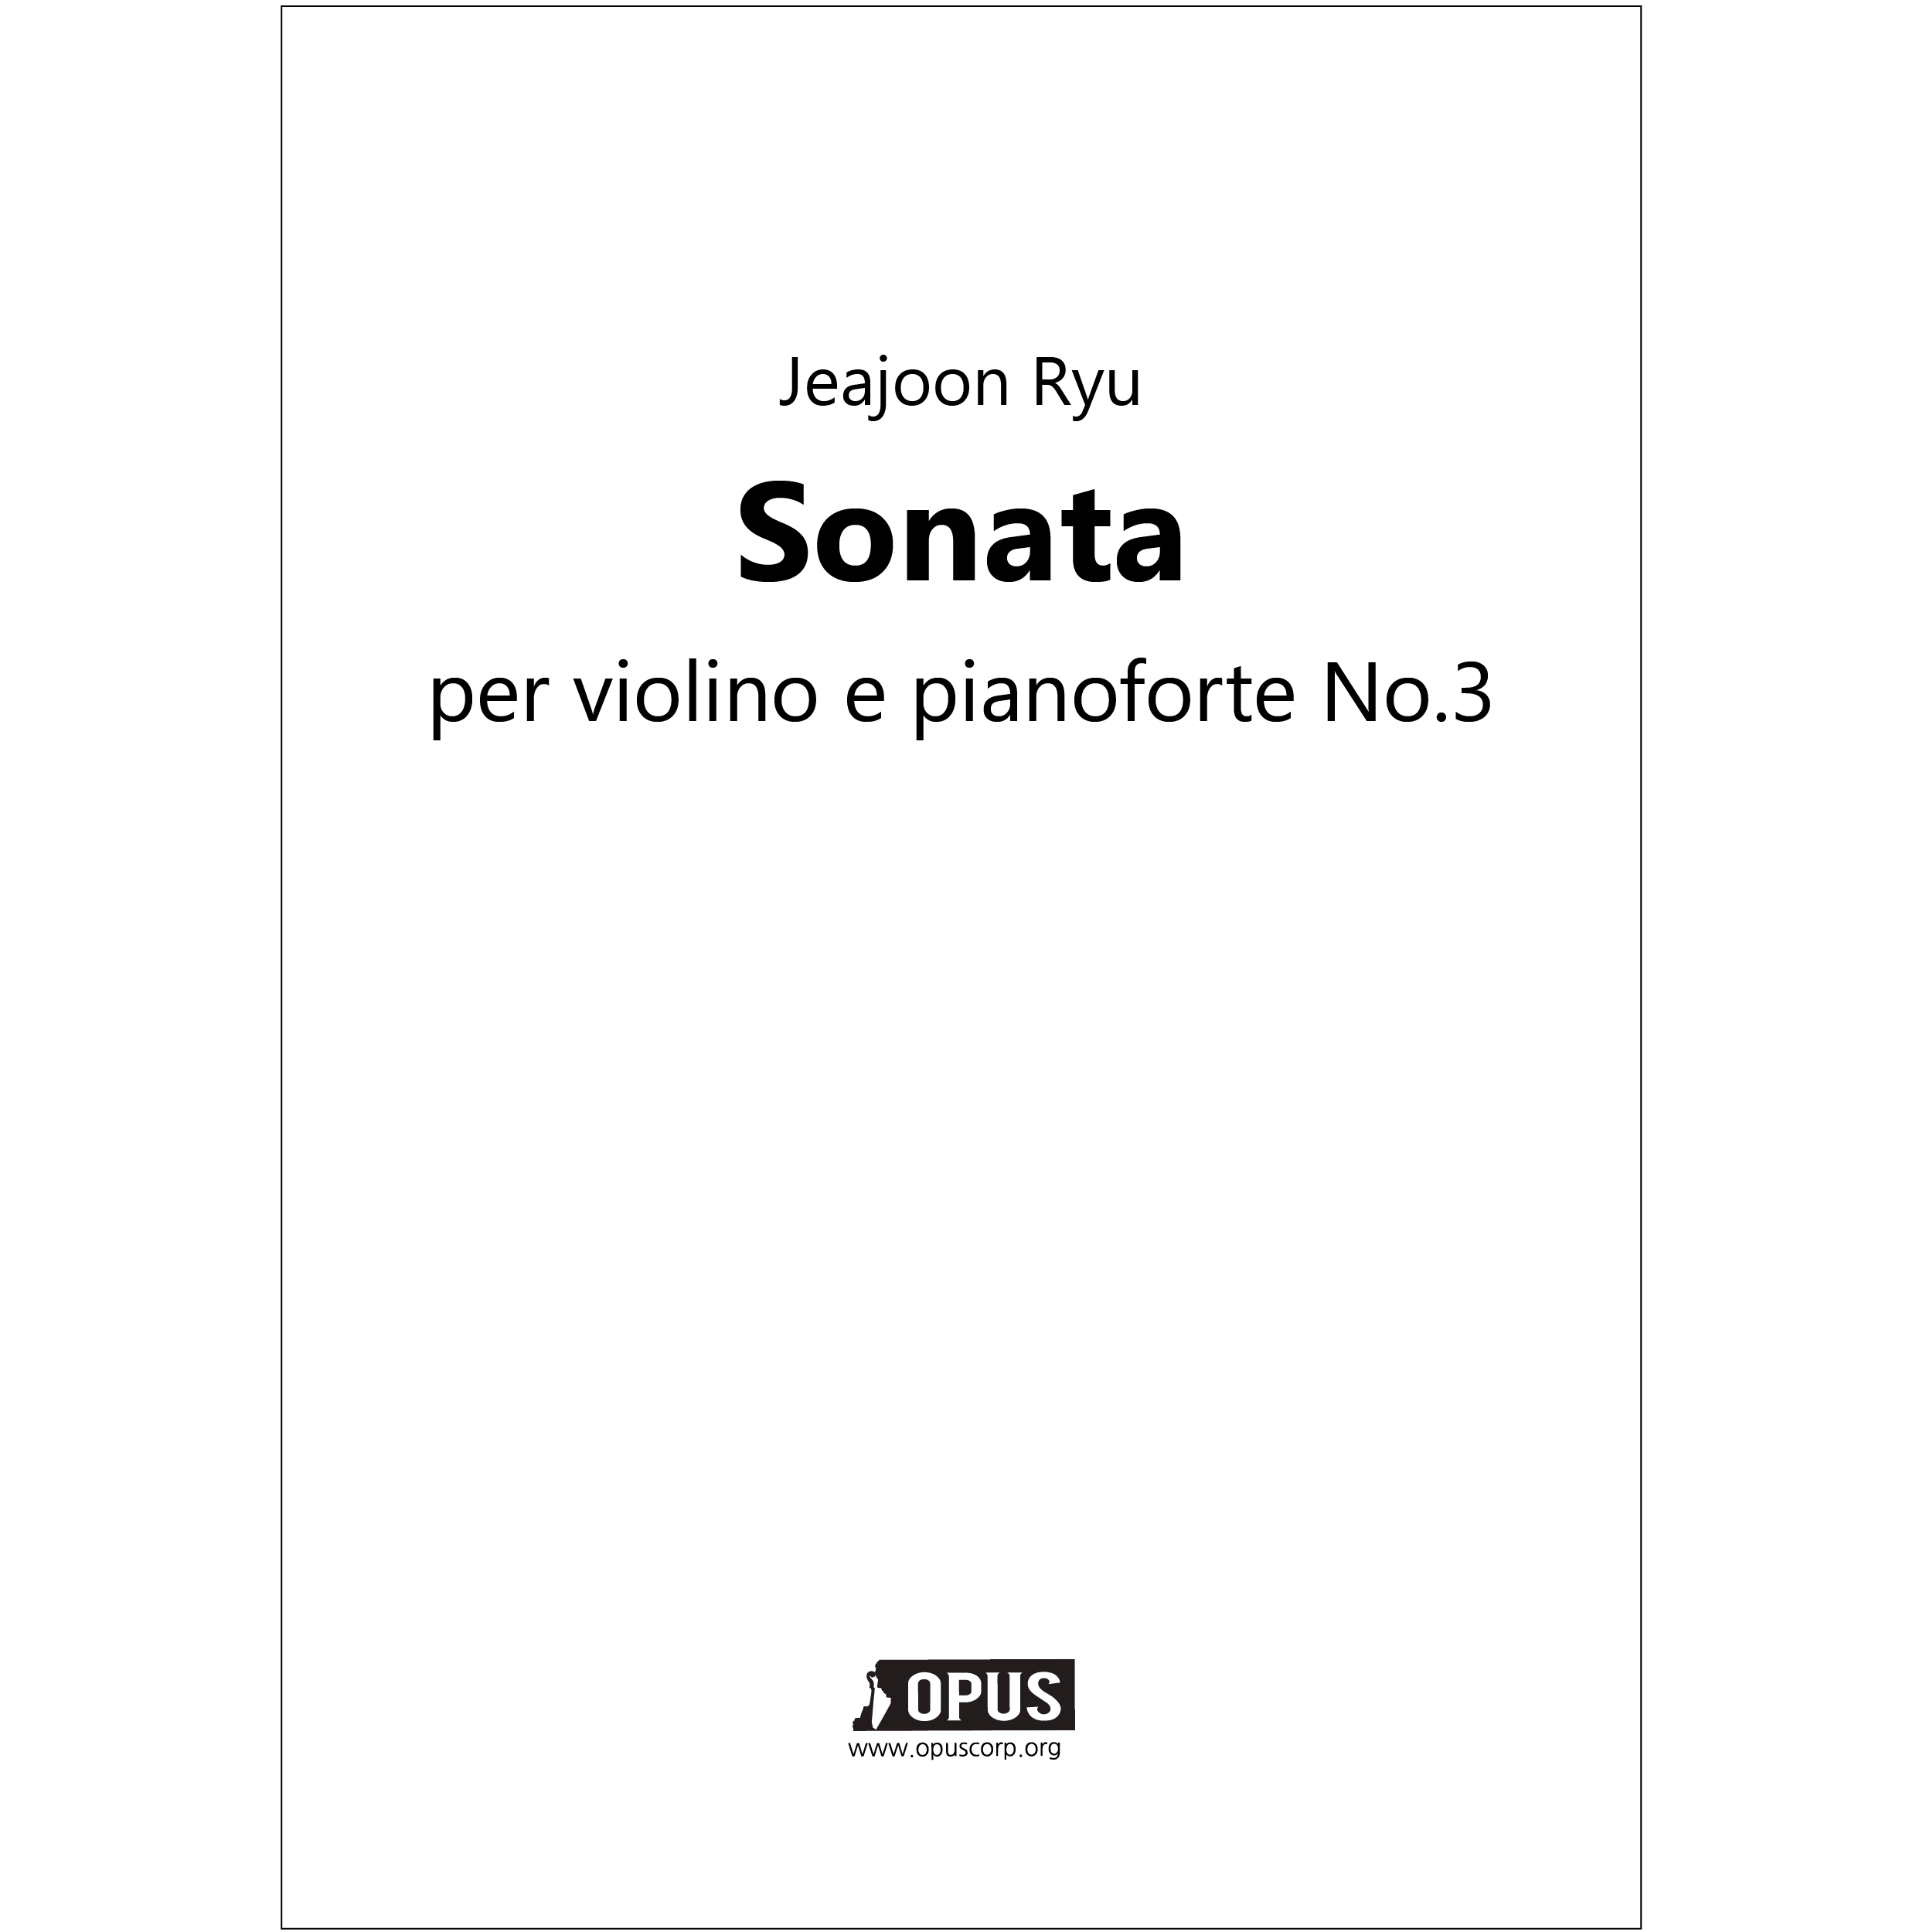 류재준 바이올린과 피아노를 위한 소나타 제 3번